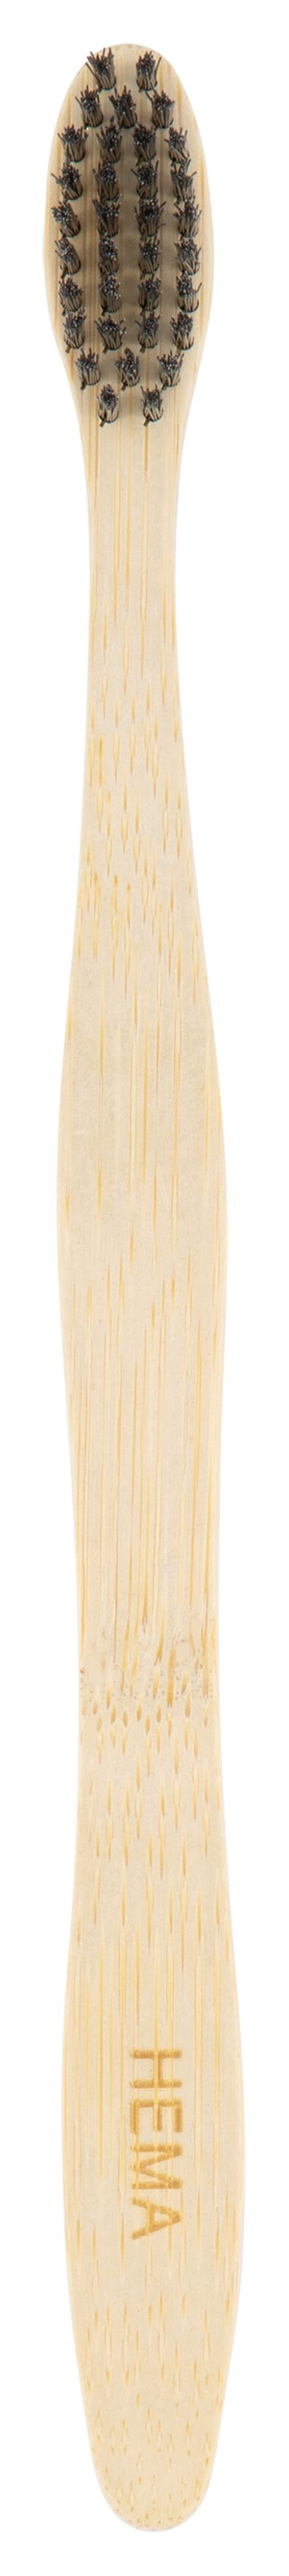 Bambus-Zahnbürste, weich - 11141040 - HEMA